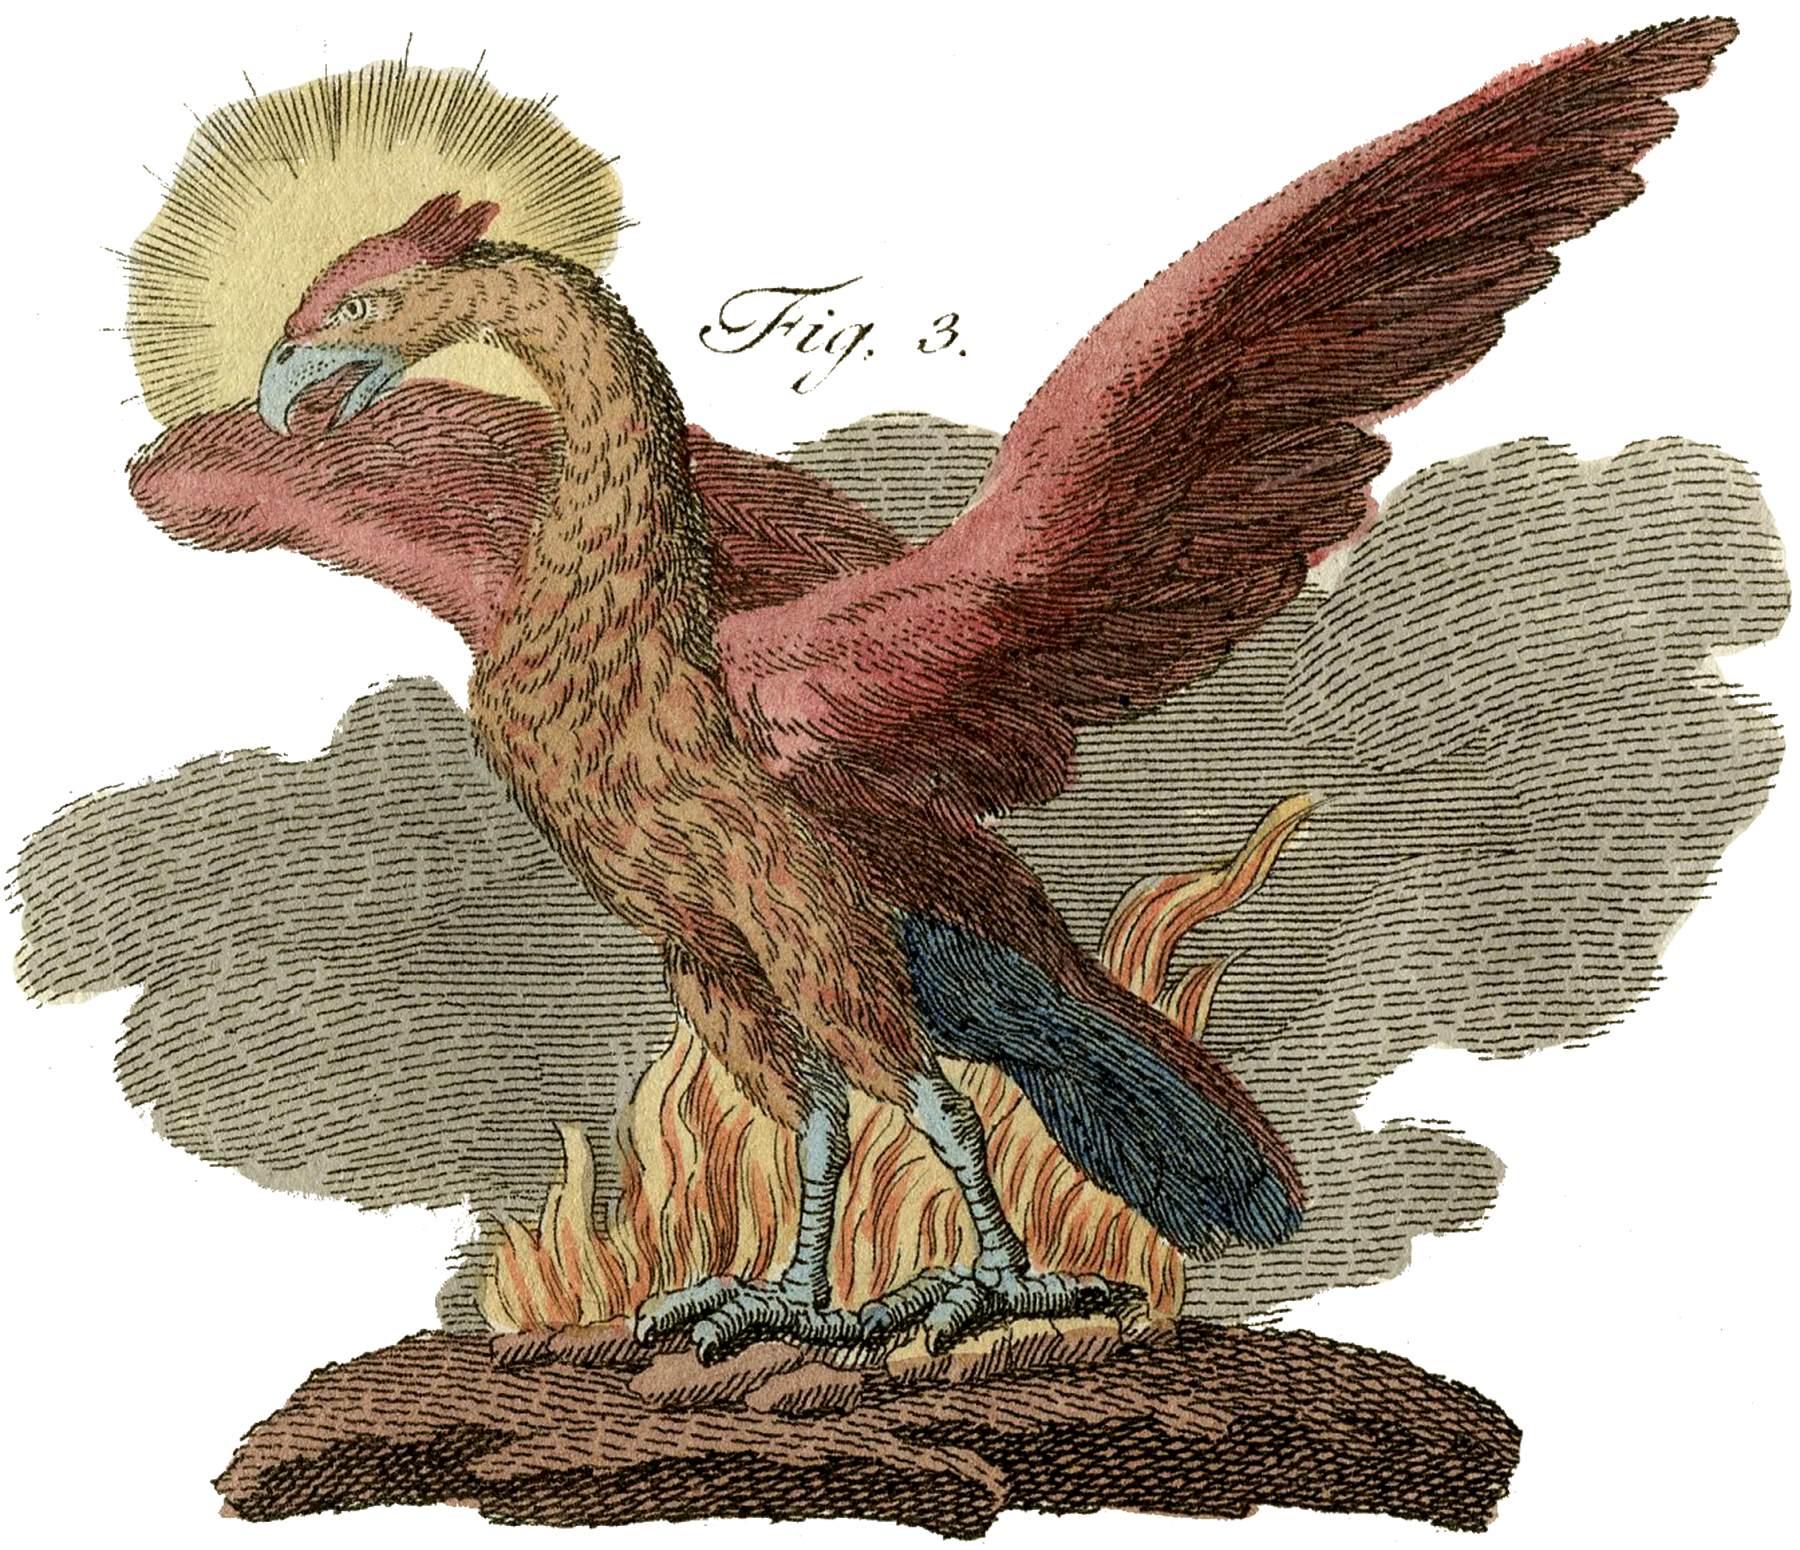 Public domain phoenix.